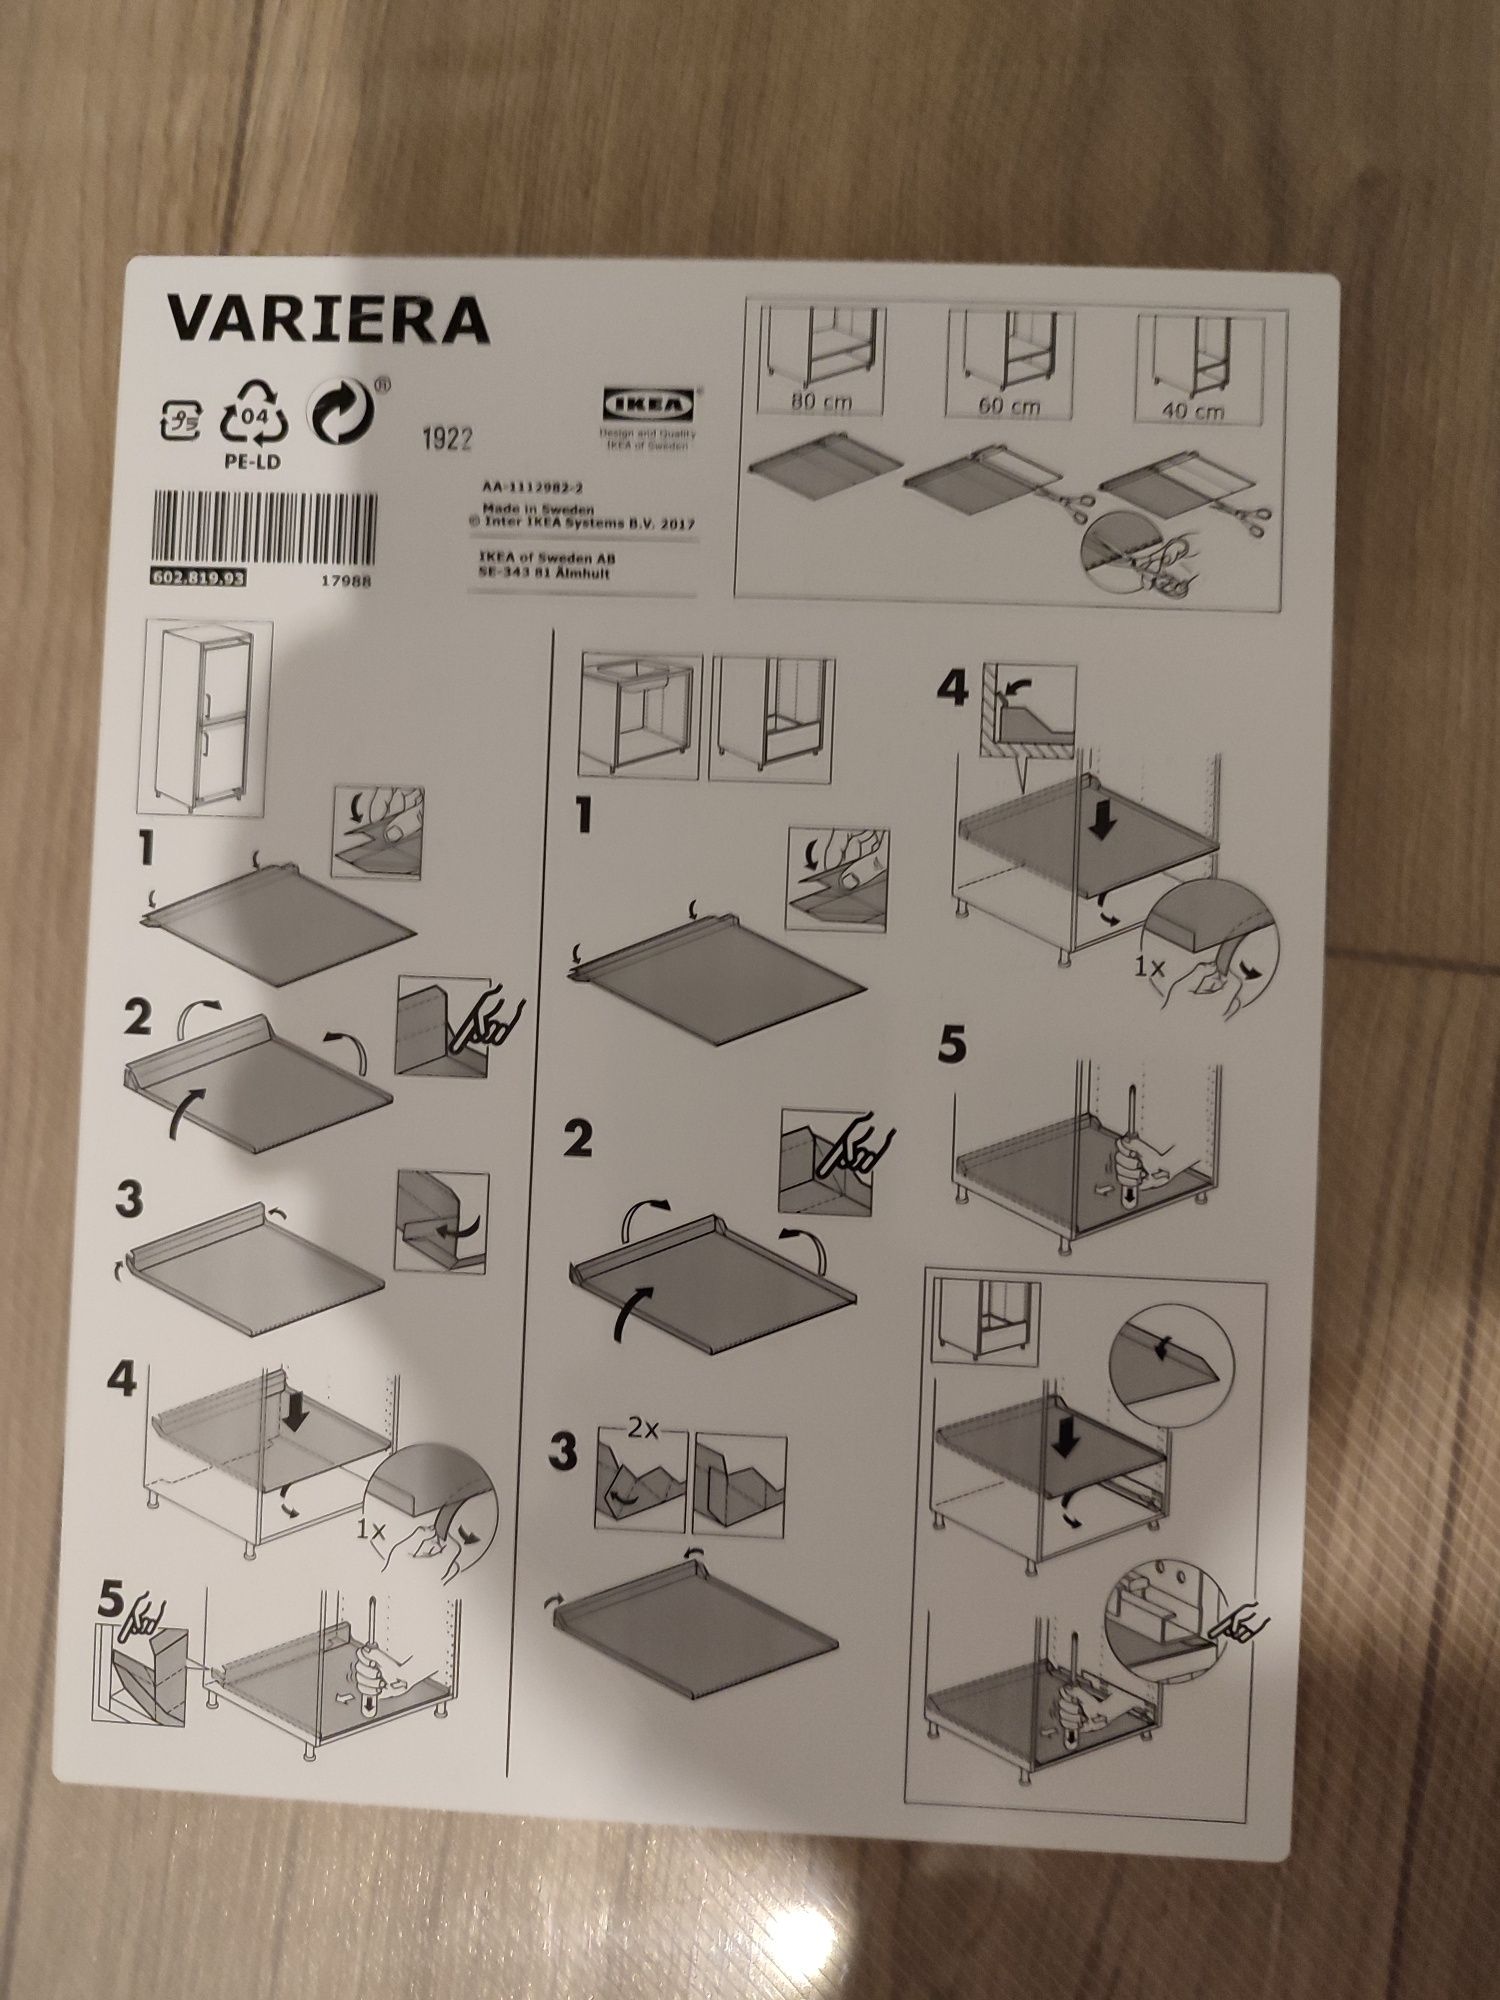 Ochraniacz pod umywalkę Ikea variera